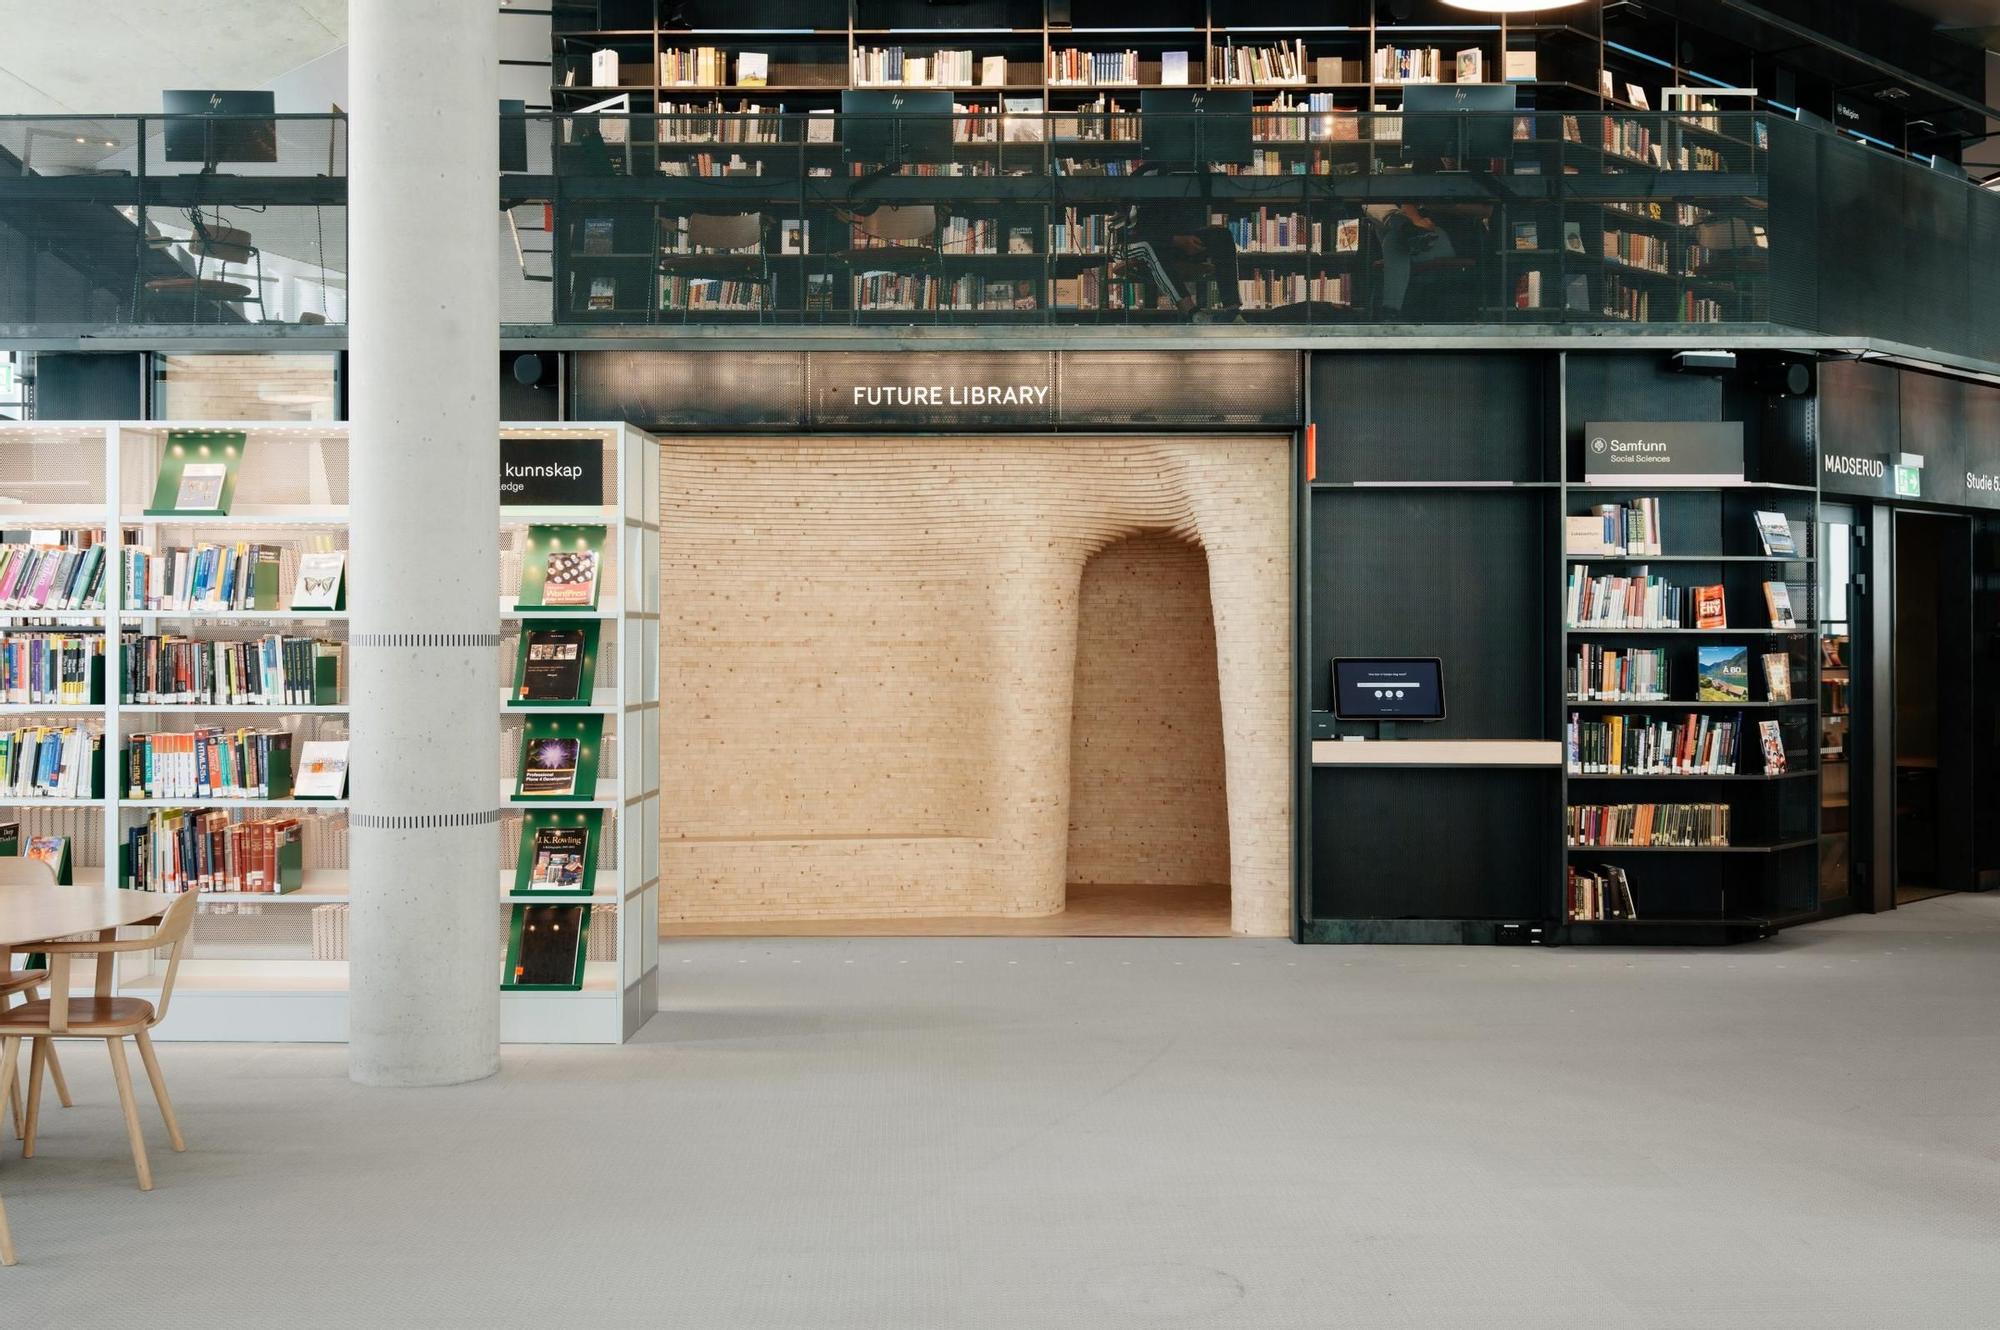 La Librería del Futuro está en una sala en la última planta de la biblioteca pública de Oslo, la más grande de Noruega